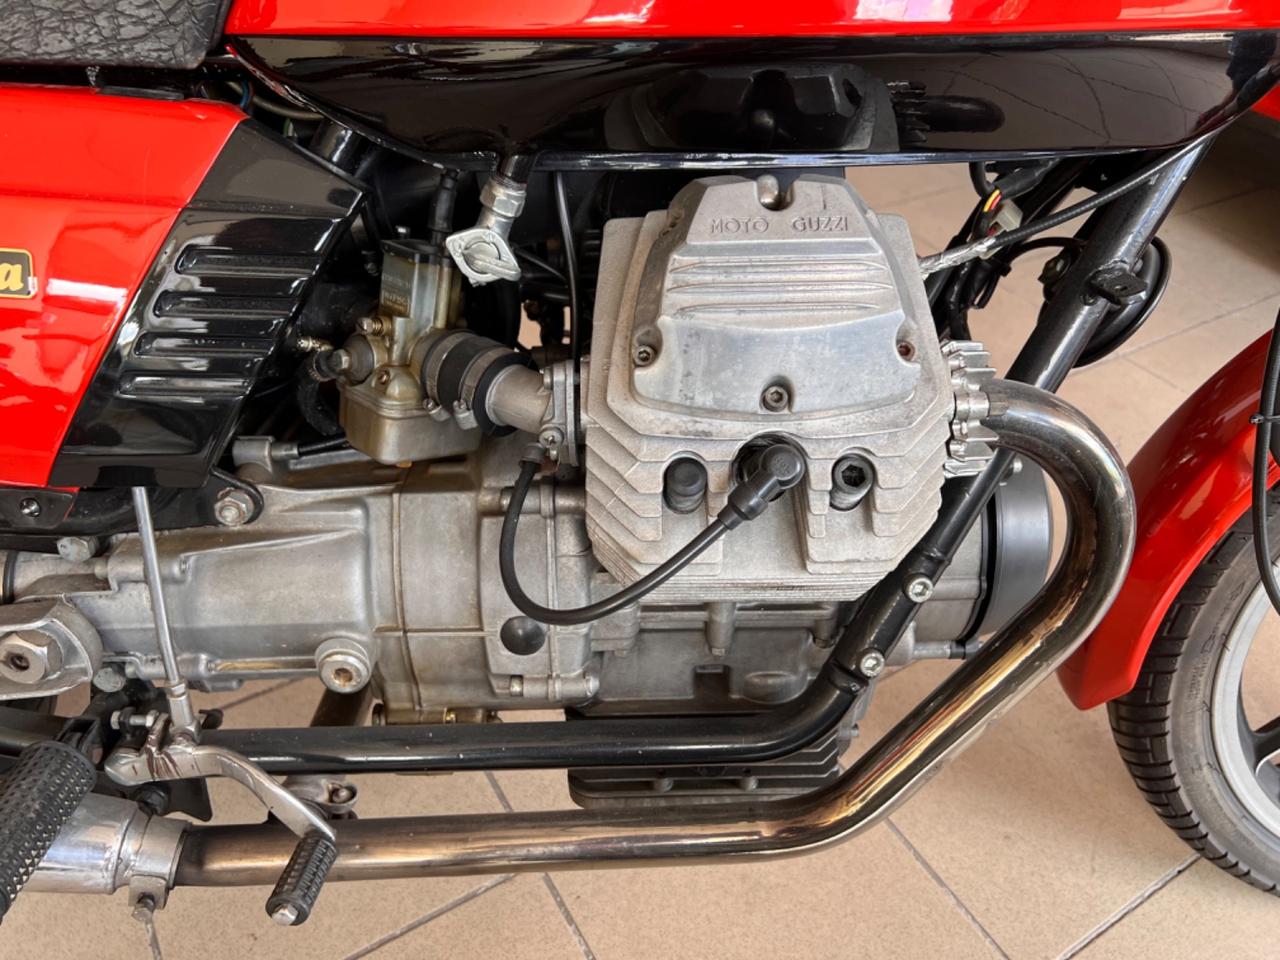 Moto Guzzi V 35 Imola